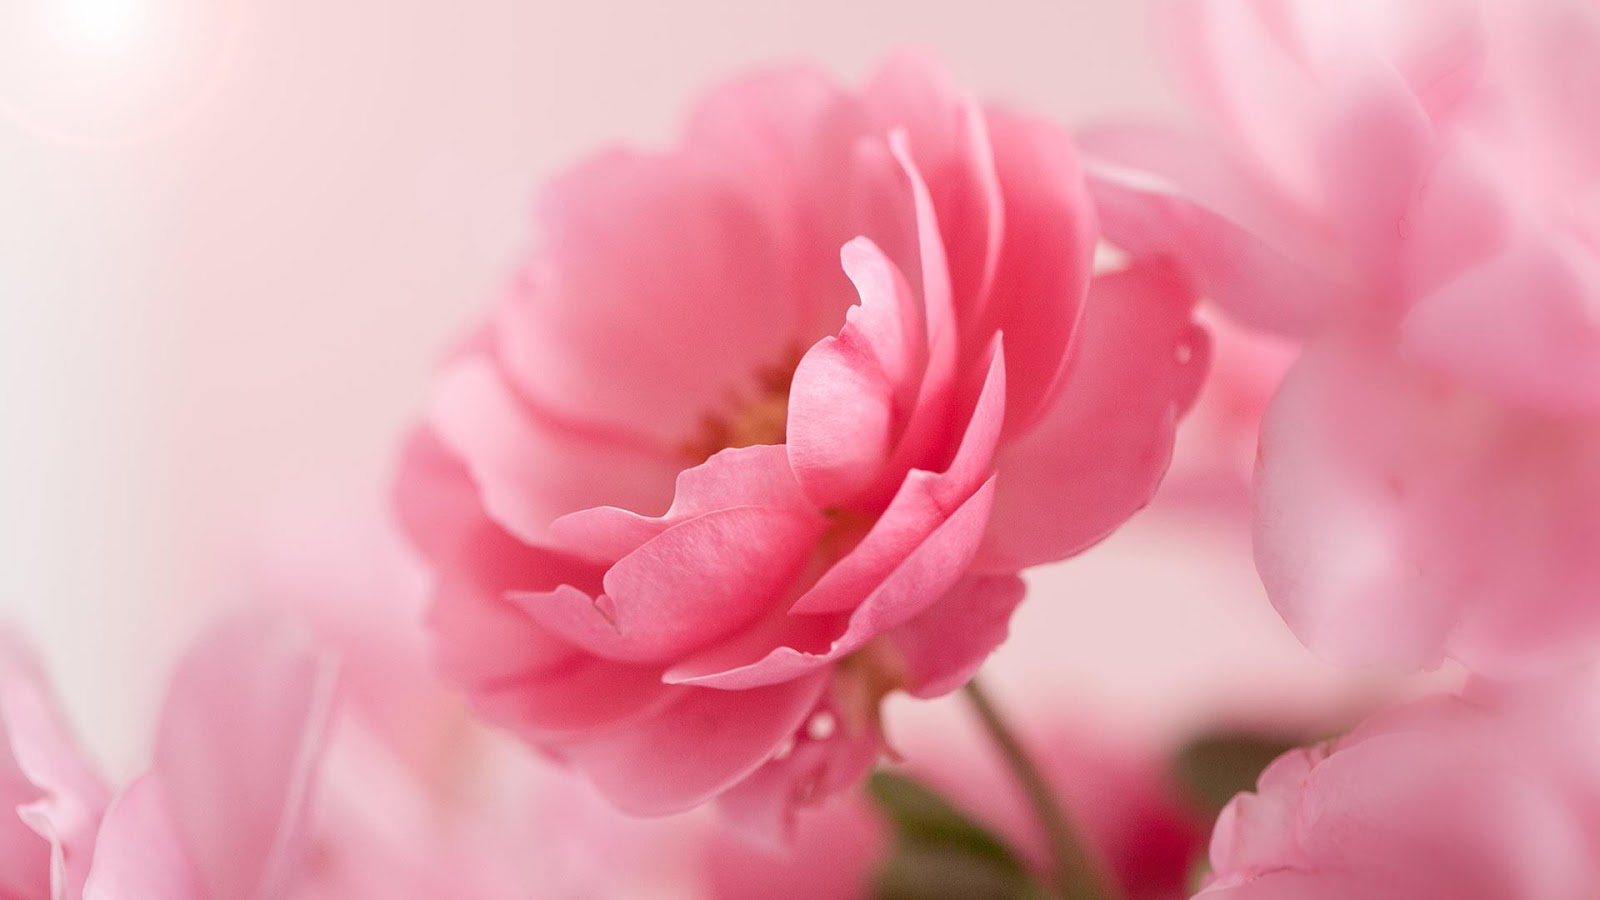 Hoa hồng là biểu tượng của quyến rũ và sắc đẹp